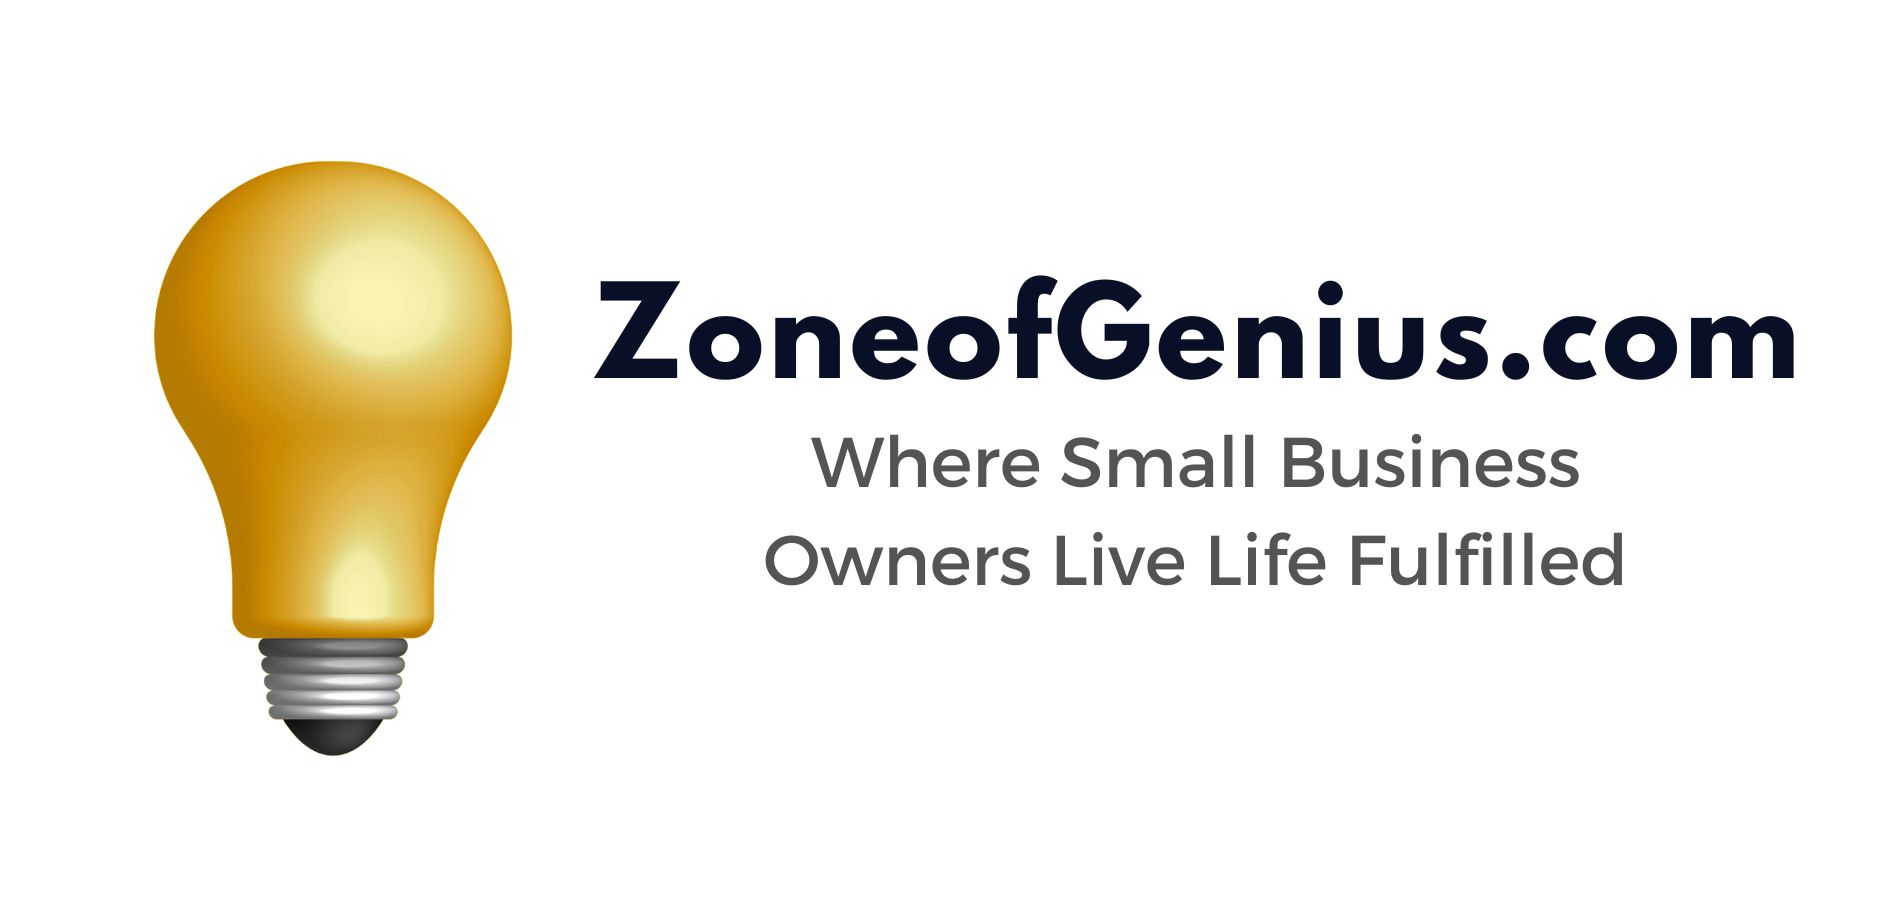 ZoneofGenius.com